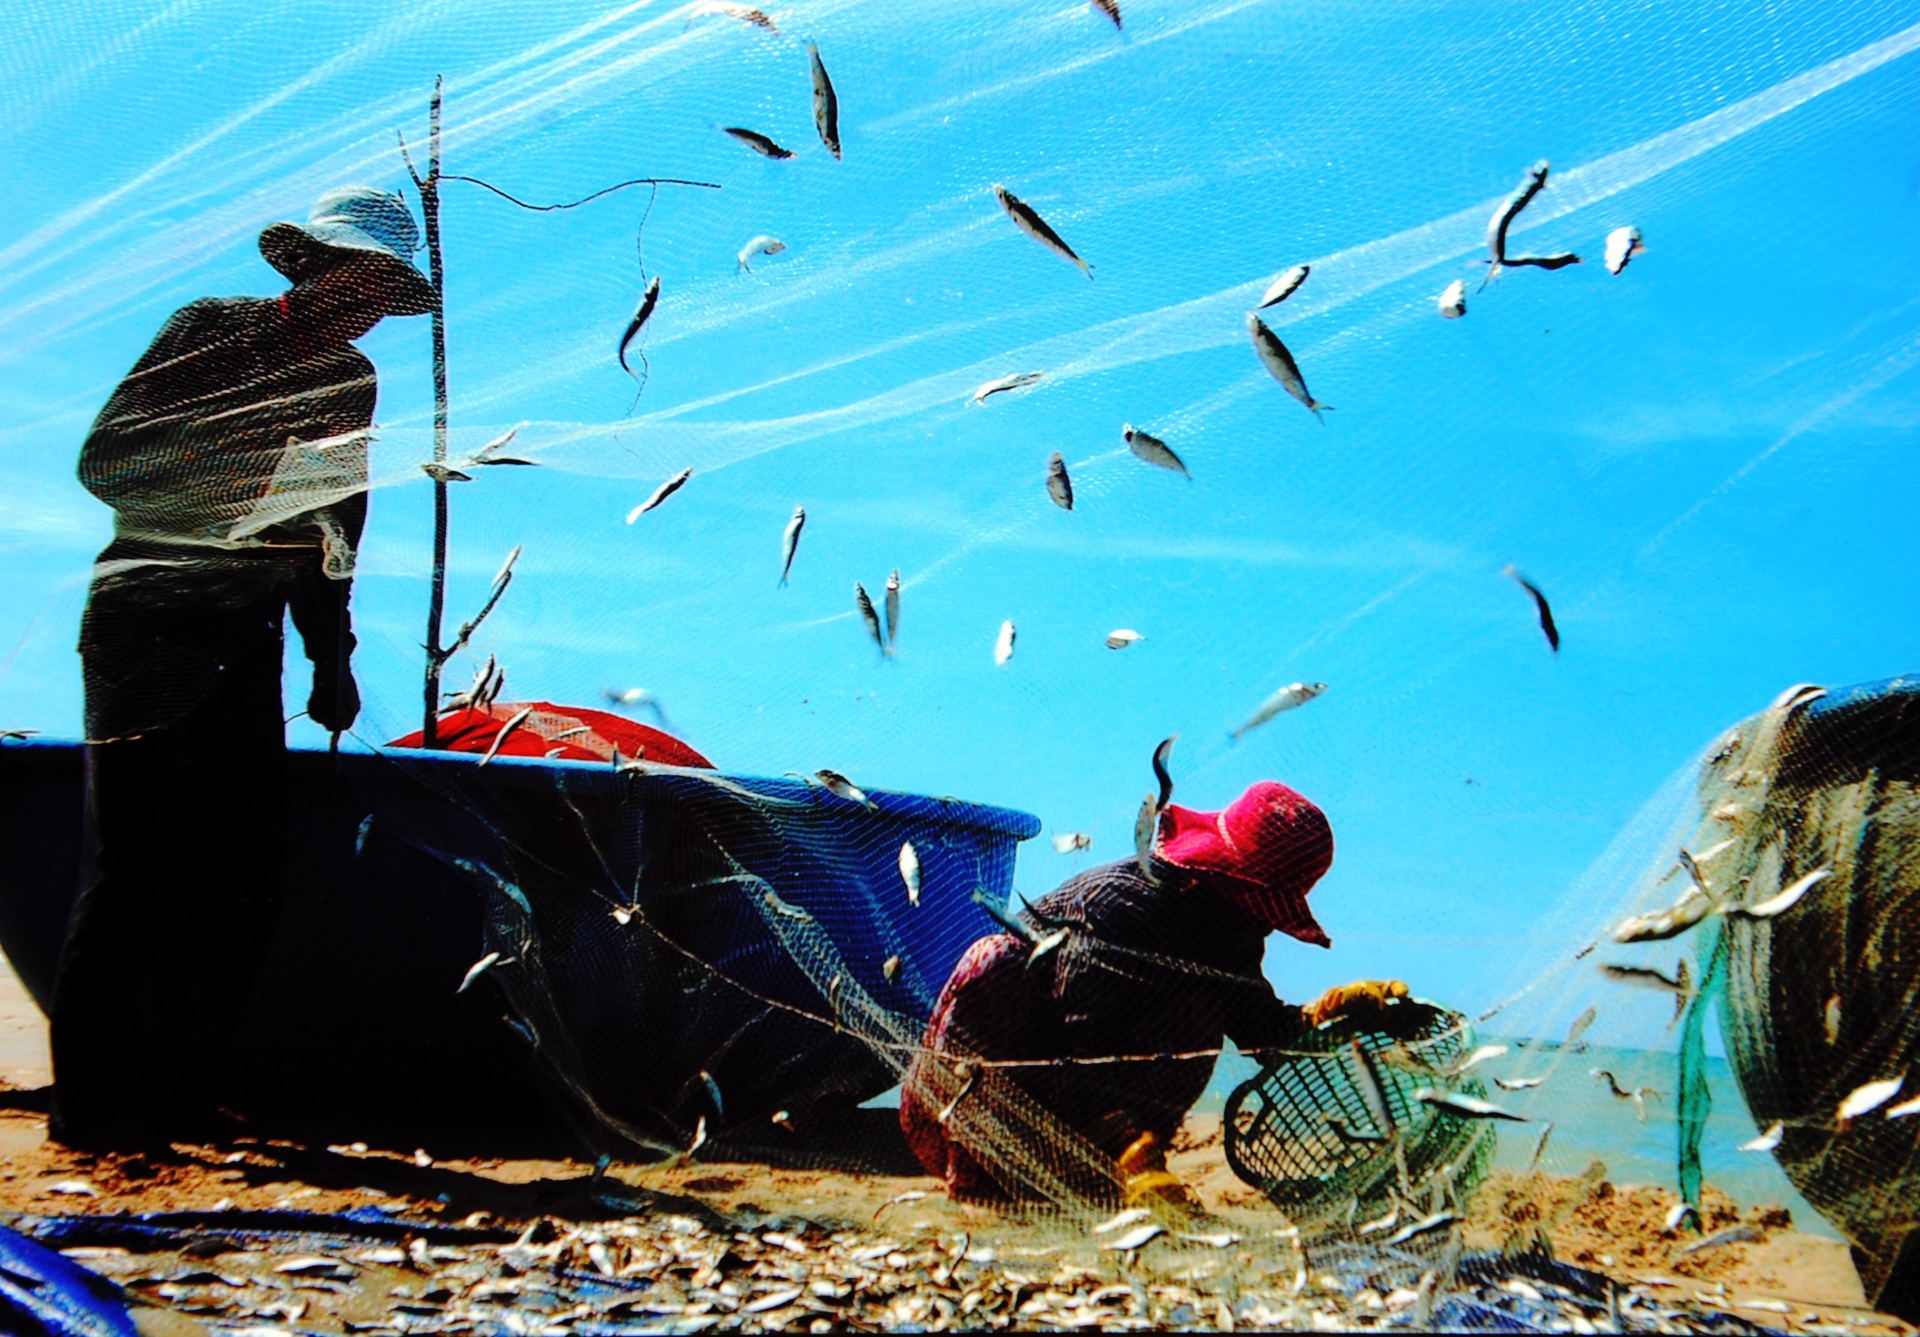 Ngư dân vui mùa cá “Rừng vàng, biển bạc là đây - Hăng say lao động, cá đầy thêm vui”